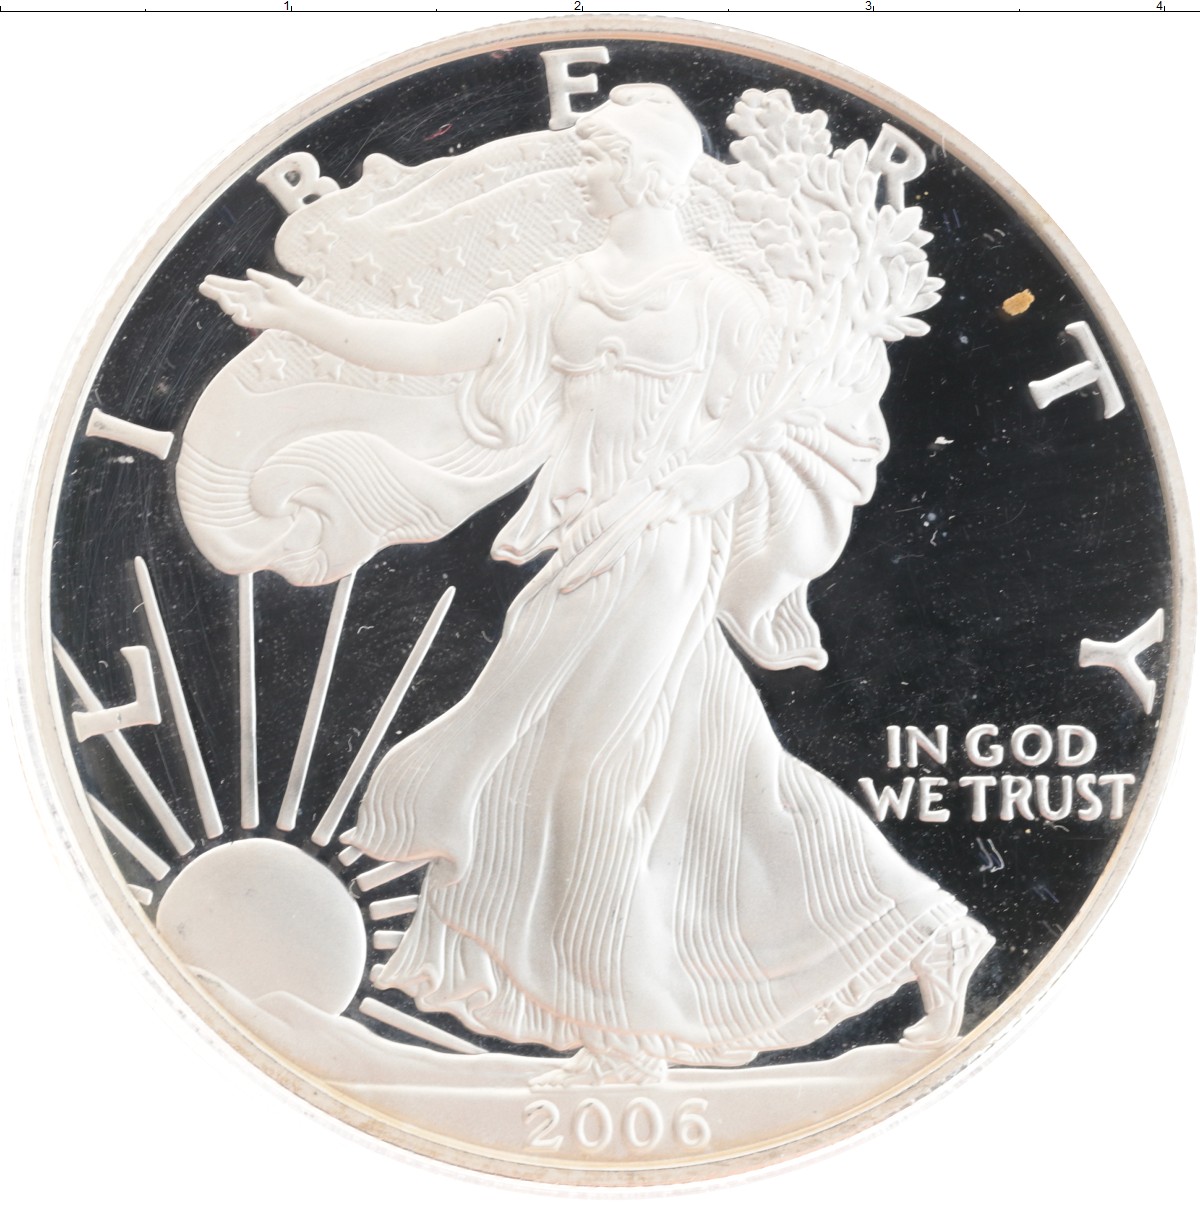 1 доллар 2006. Доллар США 2006 года. США 1 доллар (Dollar) серебро 2006. Серебряный доллар 2006. Один доллар 2006 монета.